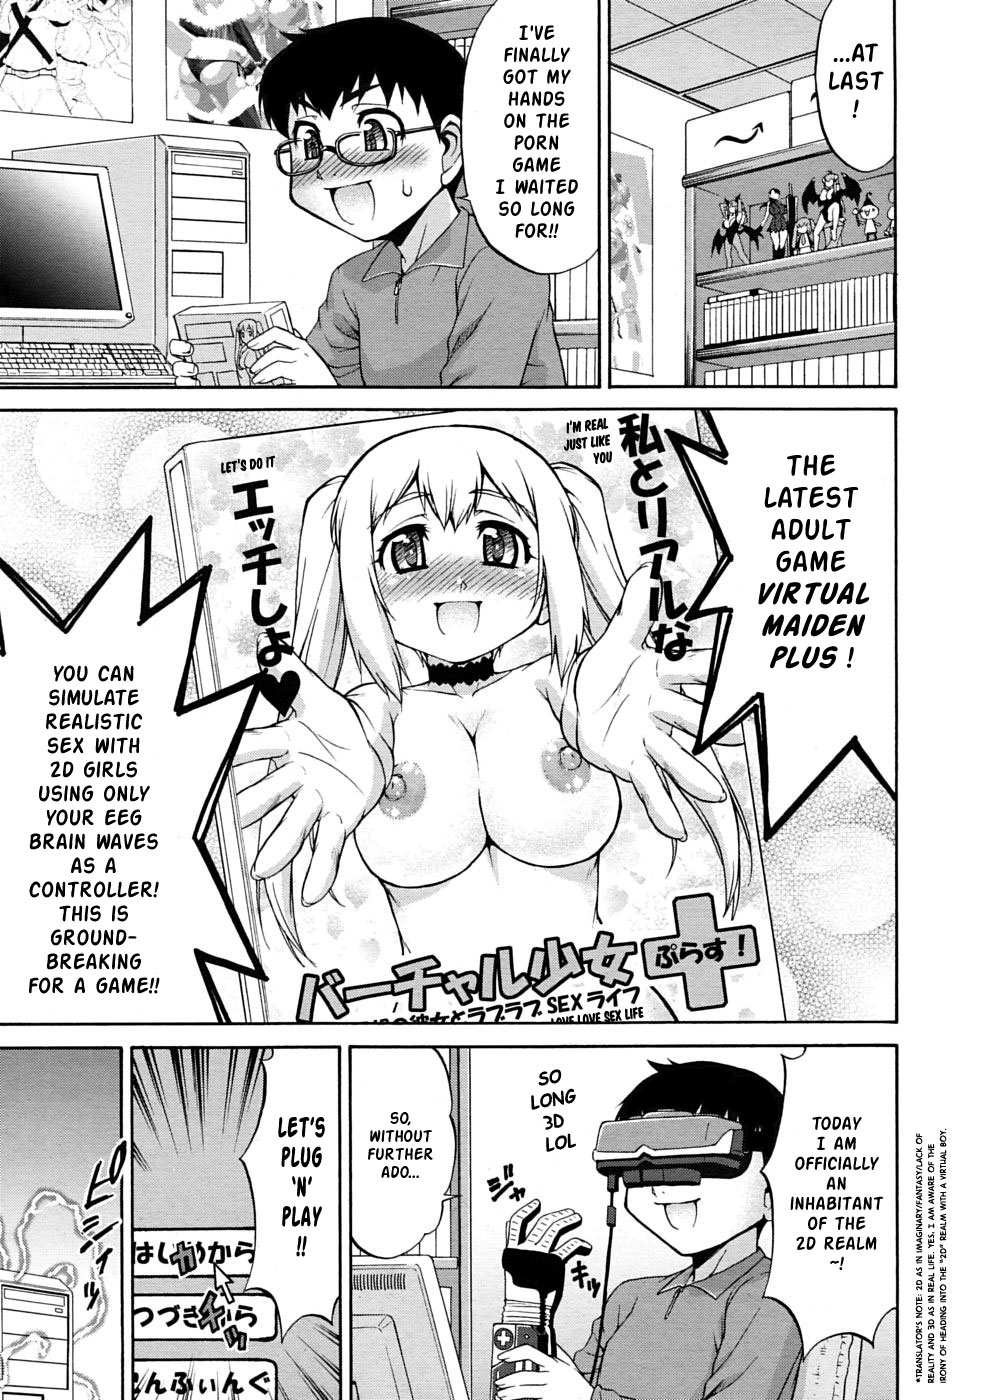 anime 3d porno comics - популярные транс порно видео в HD бесплатно